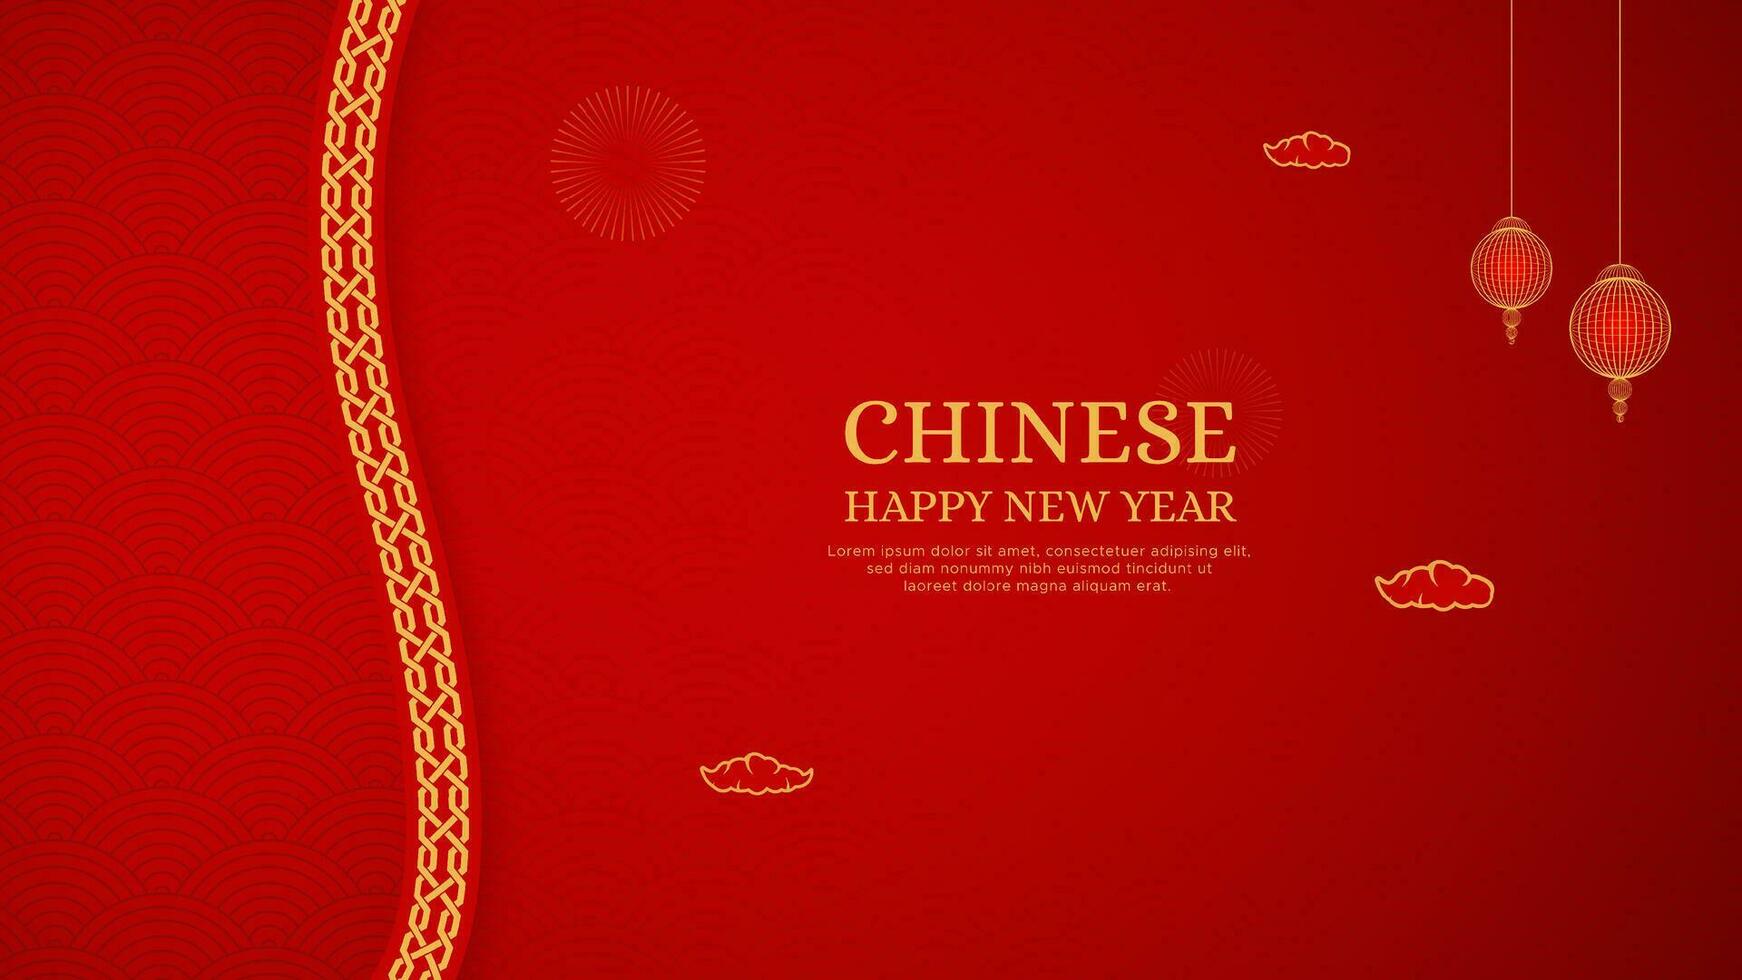 contento chino nuevo año rojo antecedentes diseño con chino frontera modelo y linternas vector